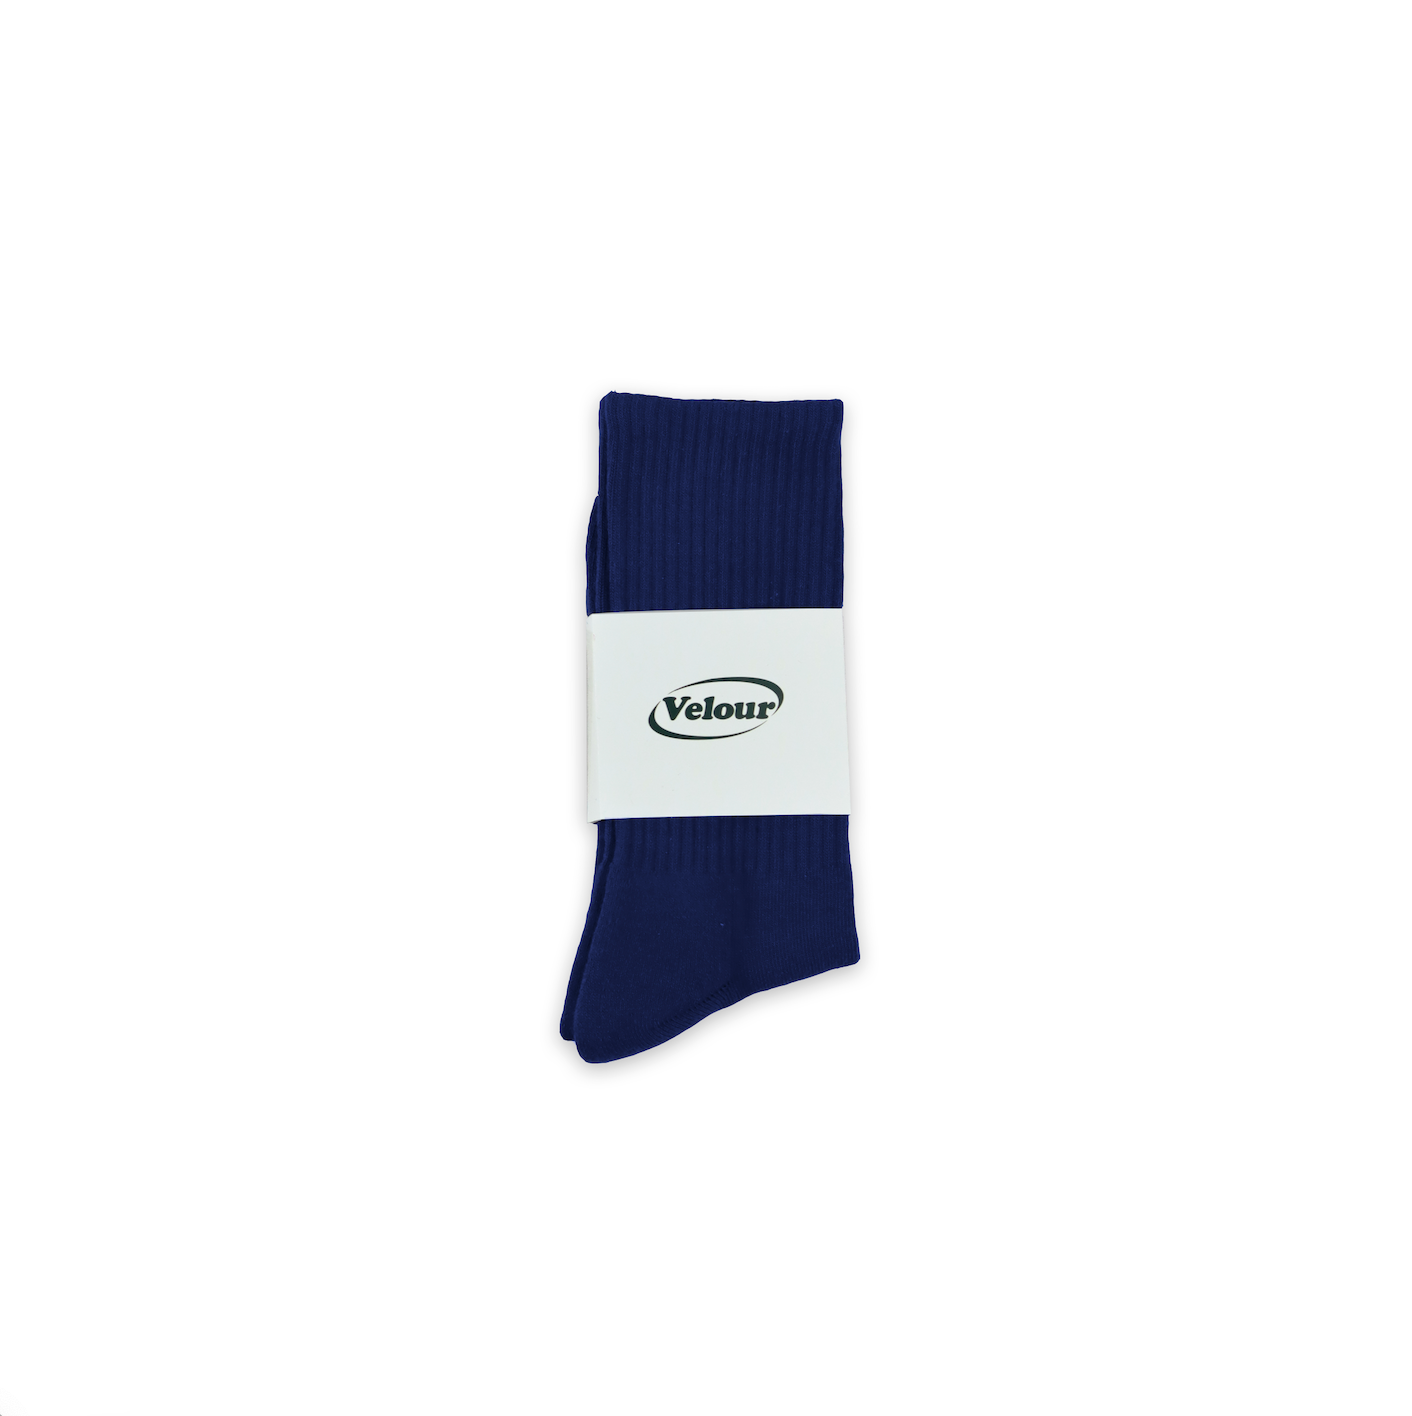 Navy Blue Socks